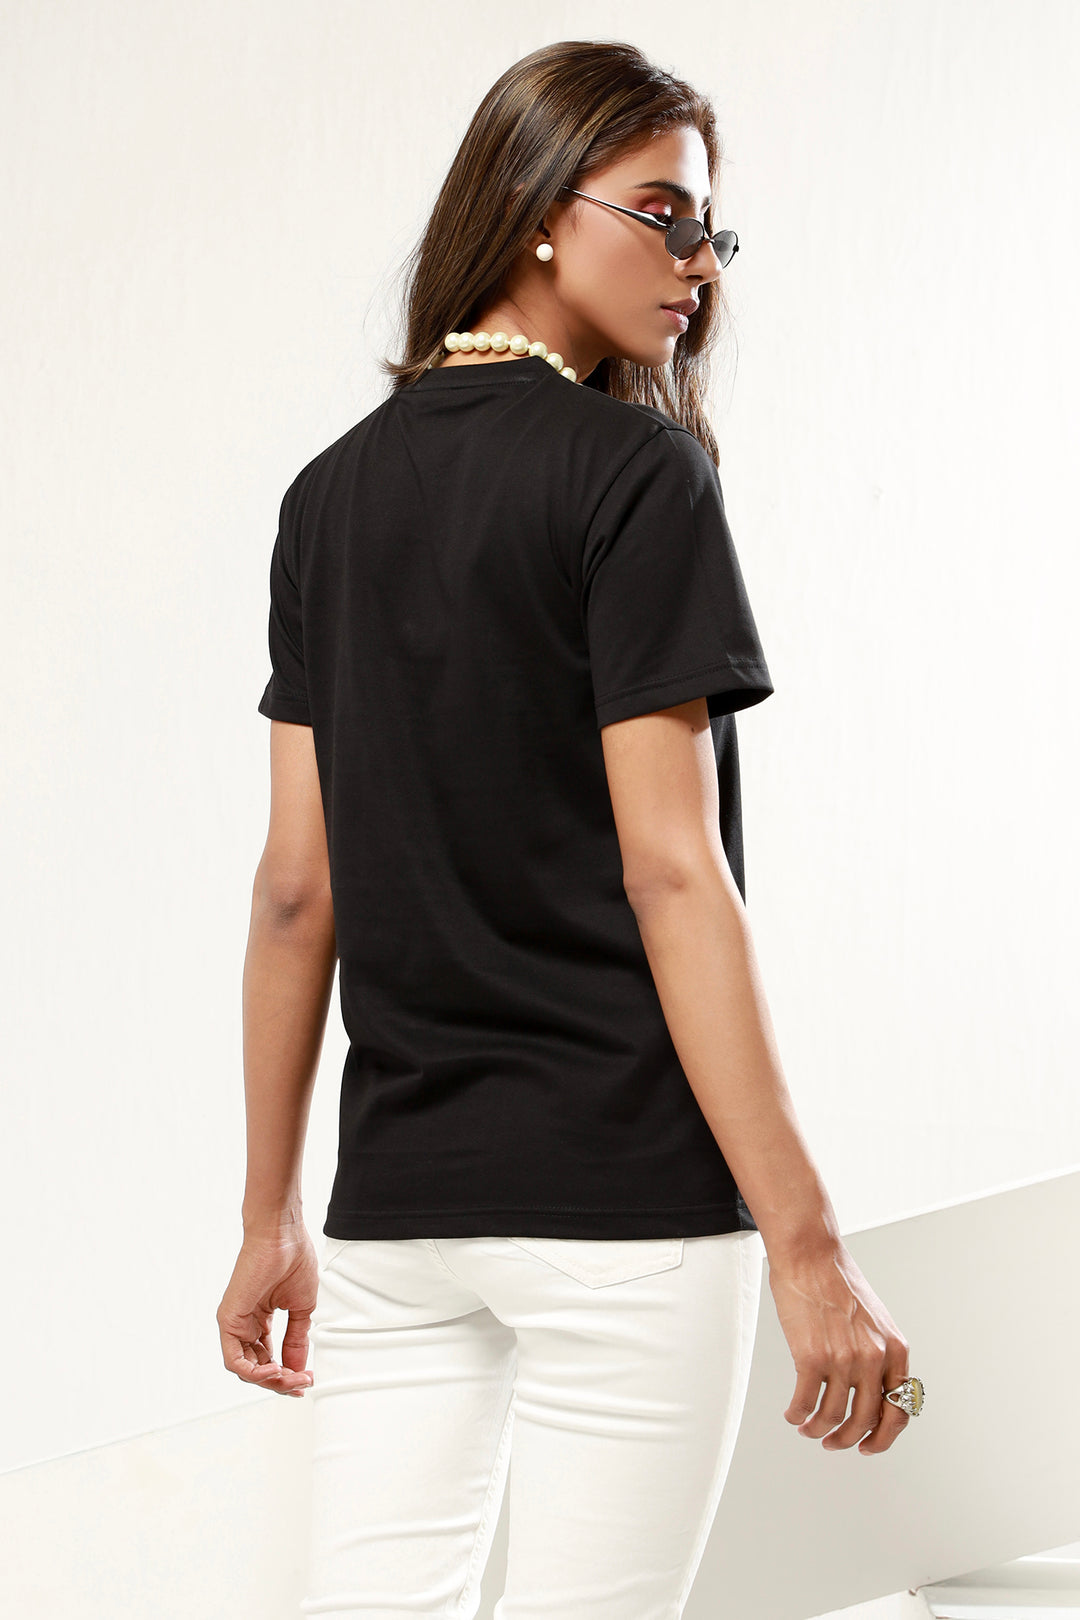 Diva Black T-Shirt -P21- WT0007R